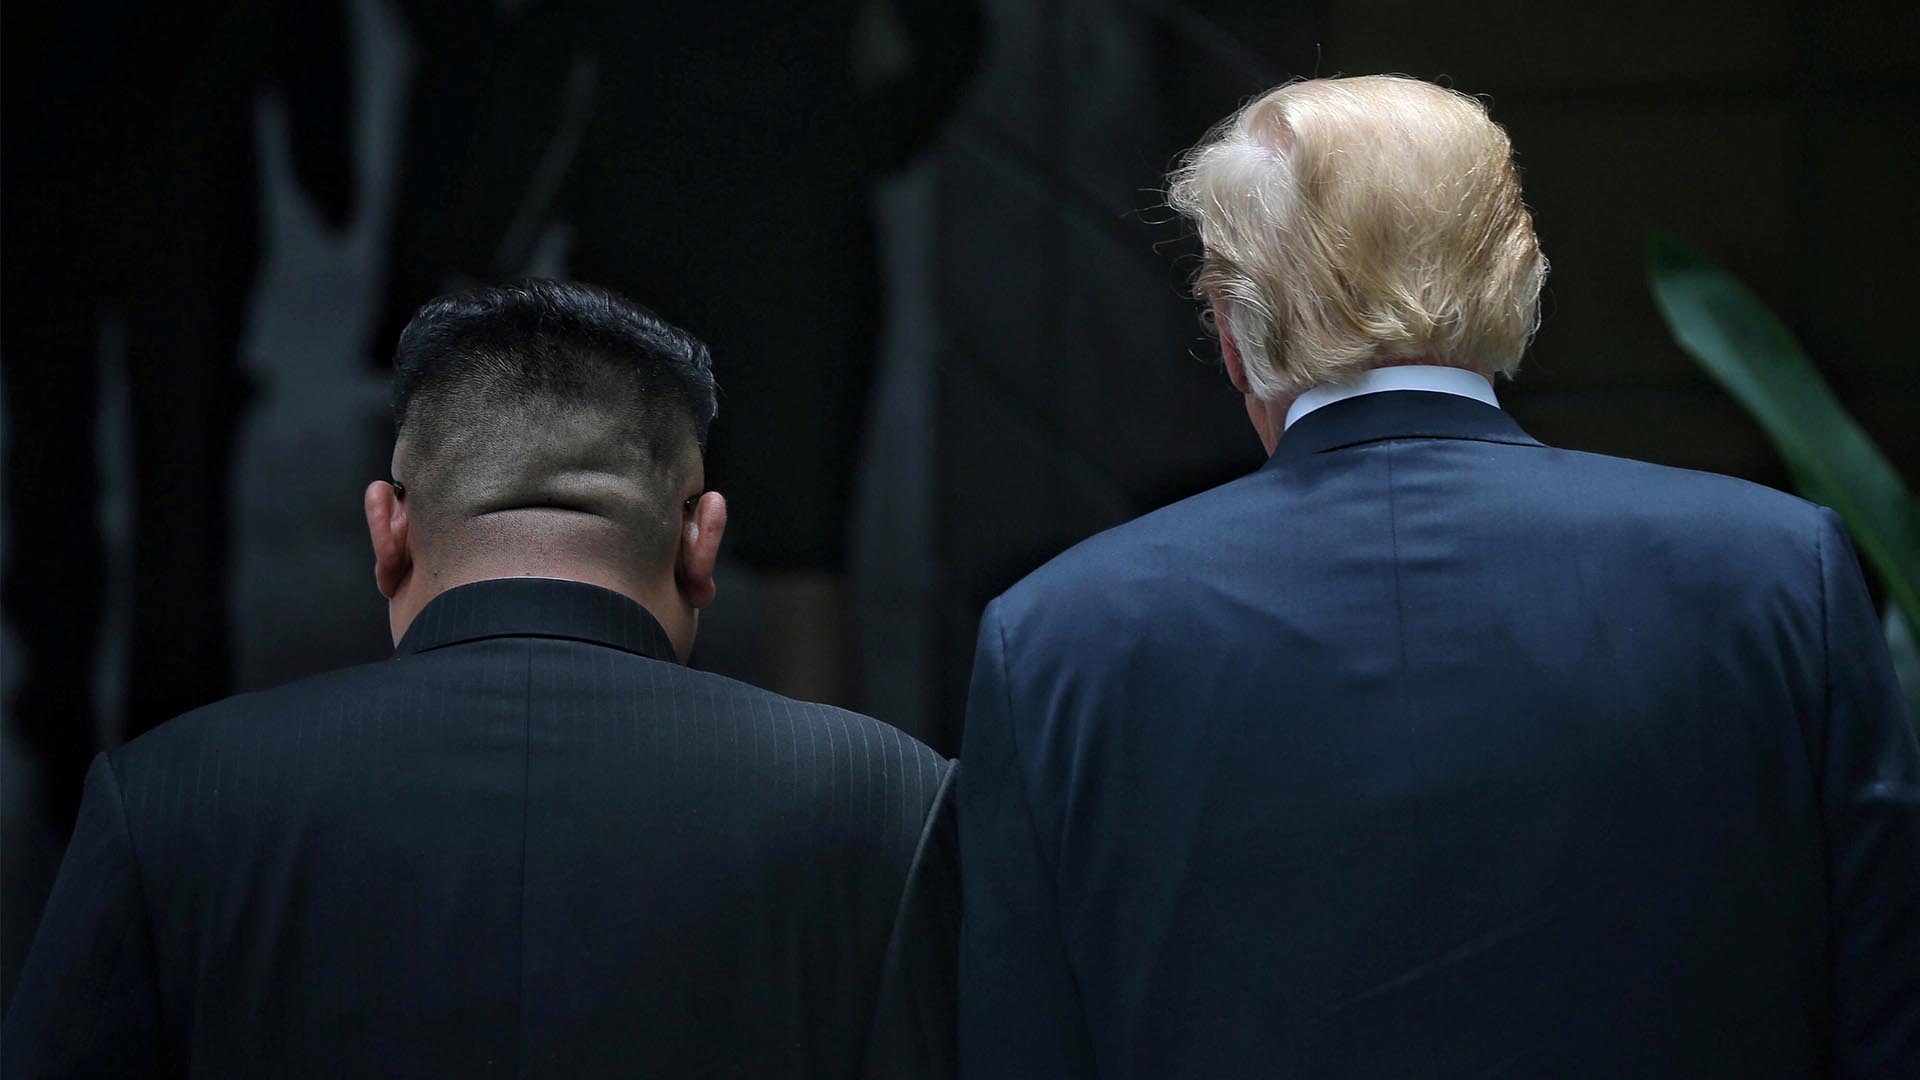 Dos victorias, la sombra de Otto Warmbier y algunas certezas sobre Kim Jong-un y Donald Trump